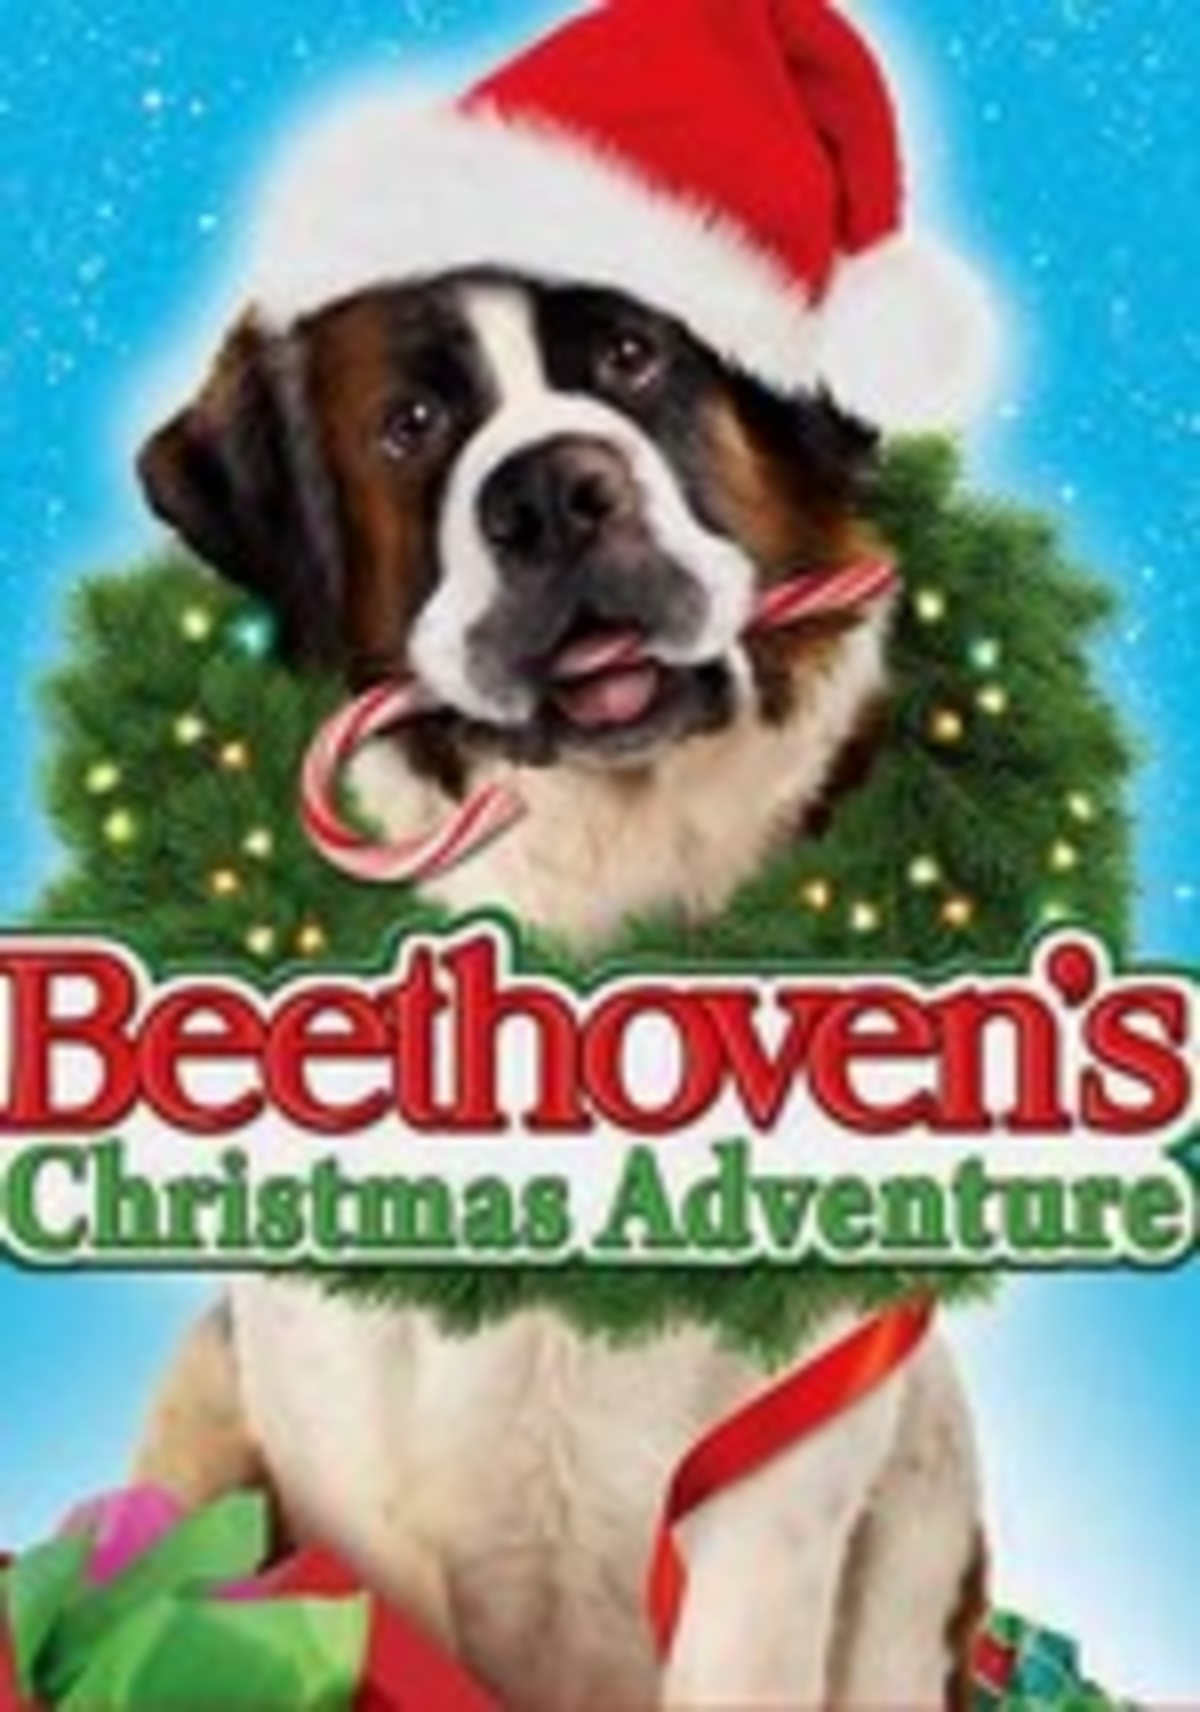 Beethoven karácsonyi kalandja